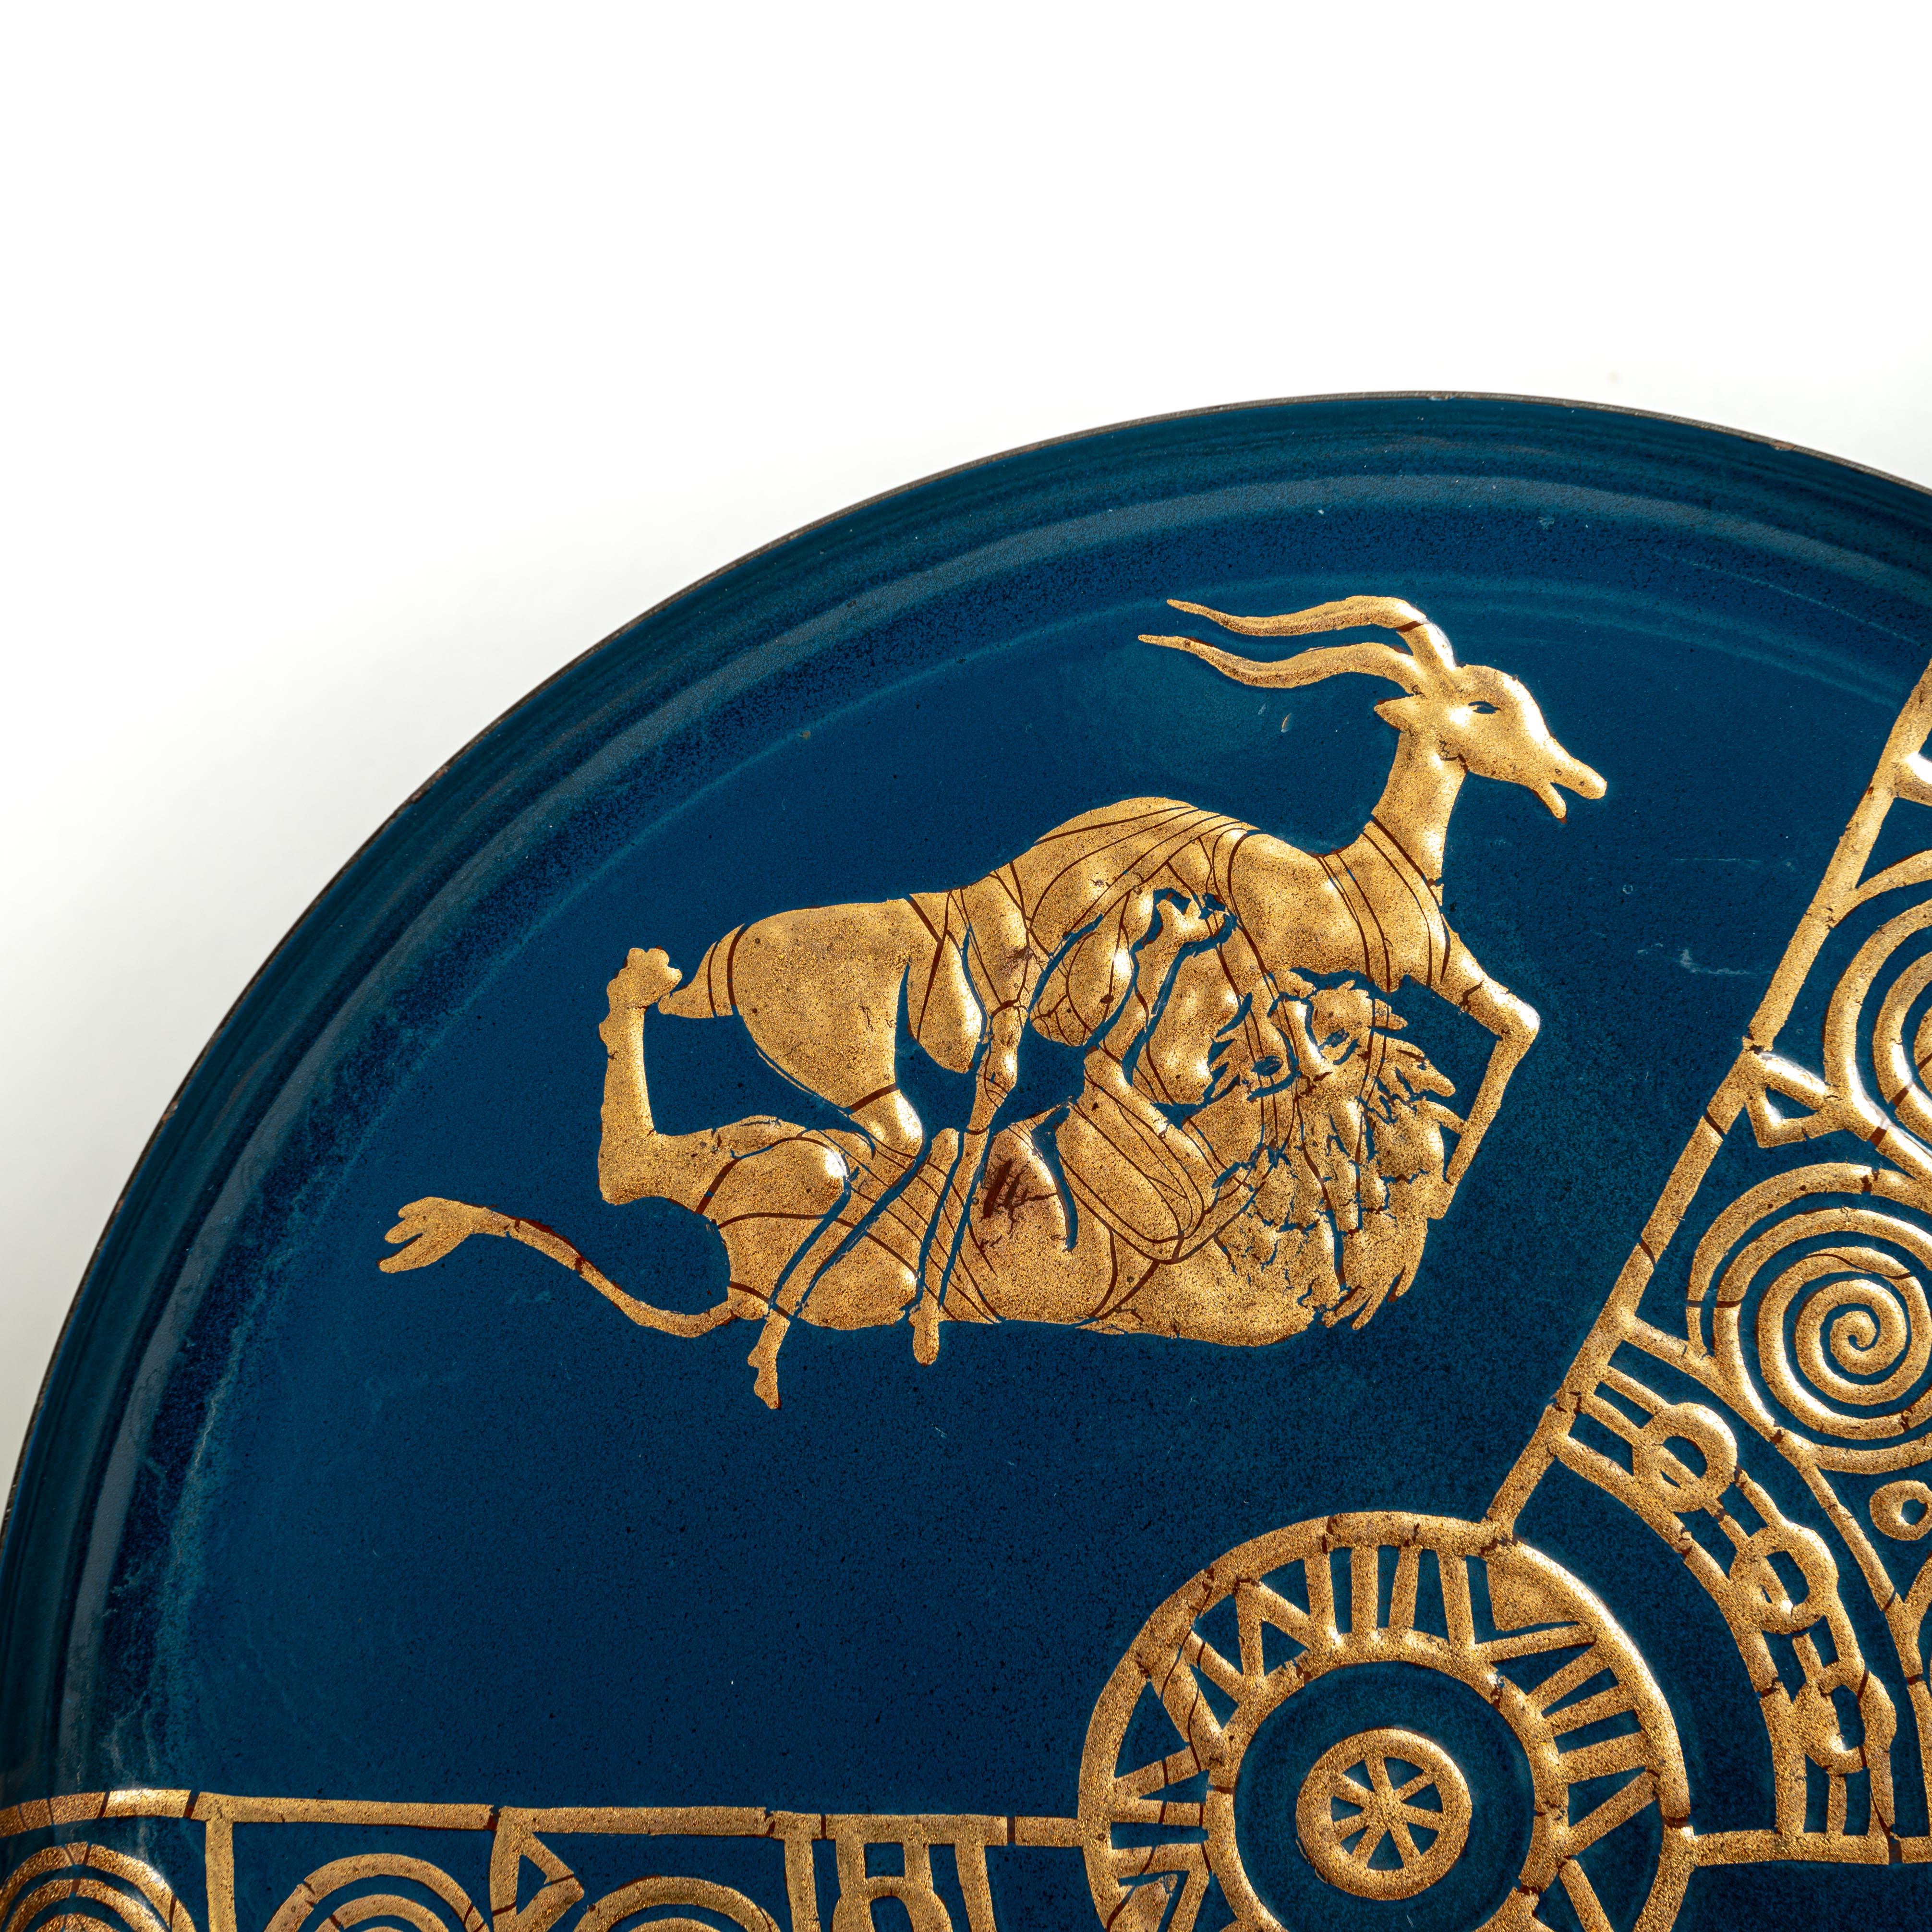 Äußerst dekoratives und seltenes Metalltablett aus dem Italien der 50er Jahre. 
Die türkisblaue Grundfarbe ist mit einer vergoldeten Darstellung des Klassizismus (stilisiert) und dekorativen Elementen verziert. 
Die Kampfszene von Löwe mit Gazelle